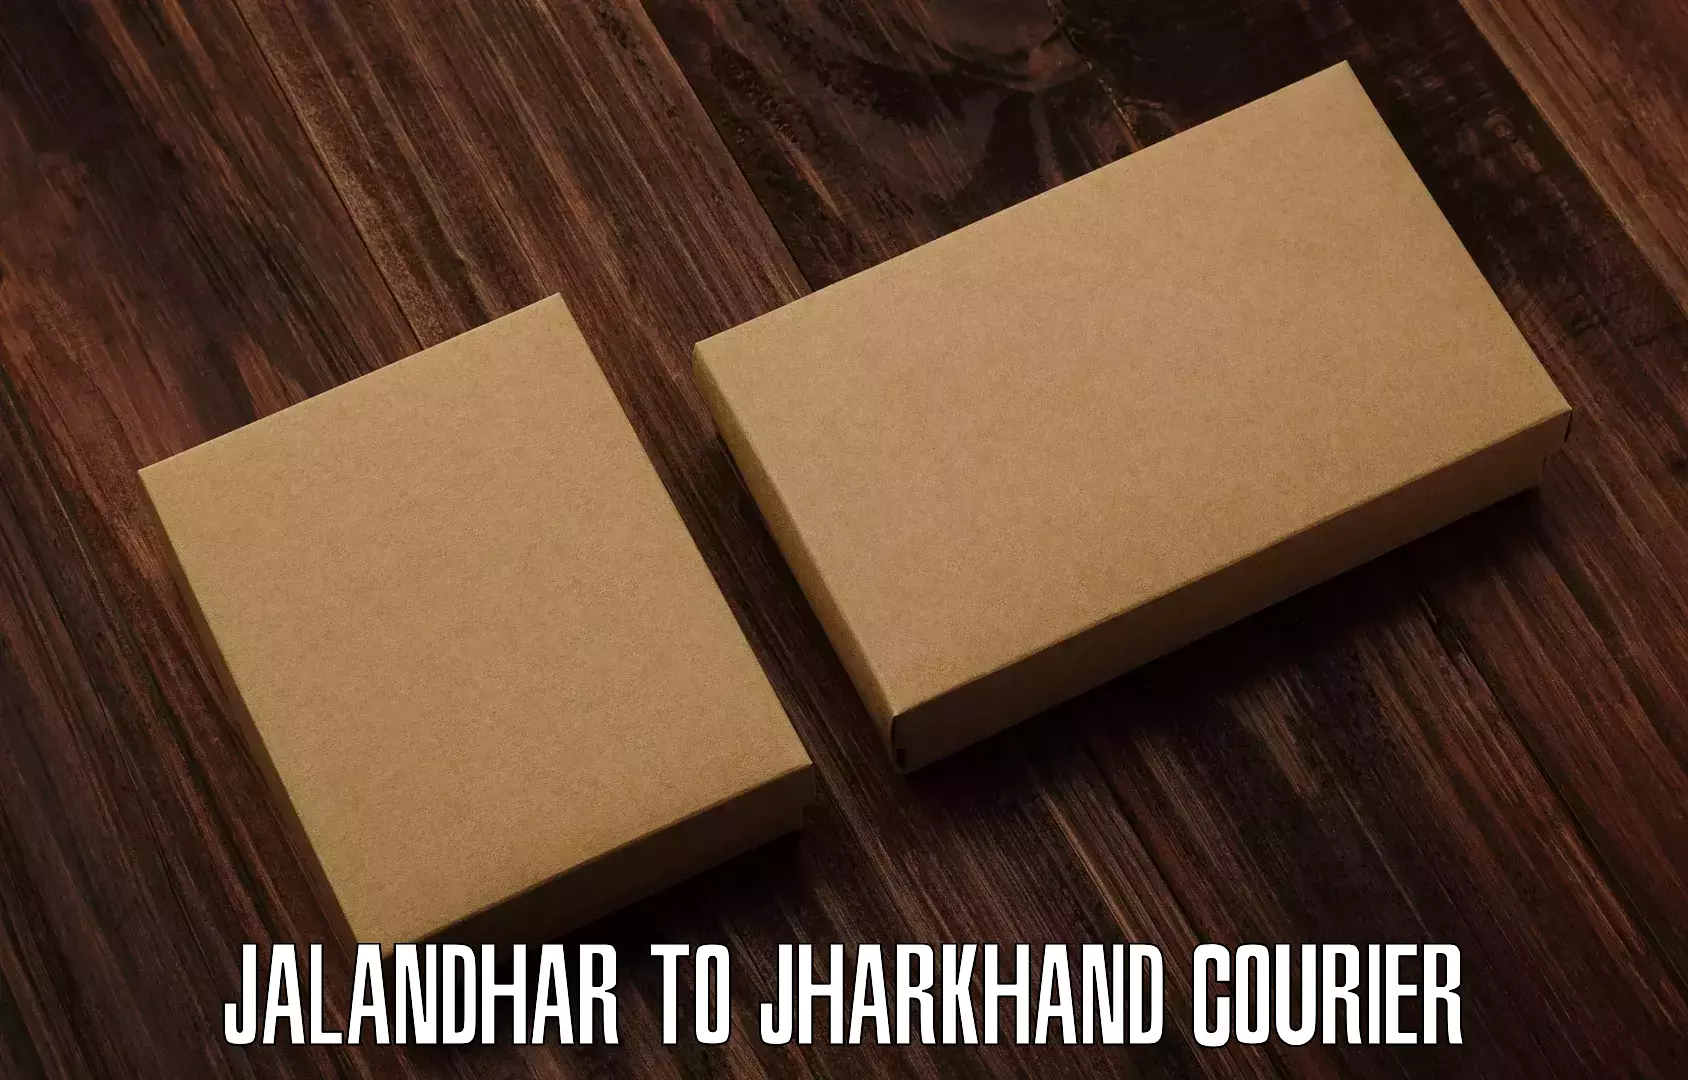 Flexible delivery scheduling Jalandhar to Jamshedpur